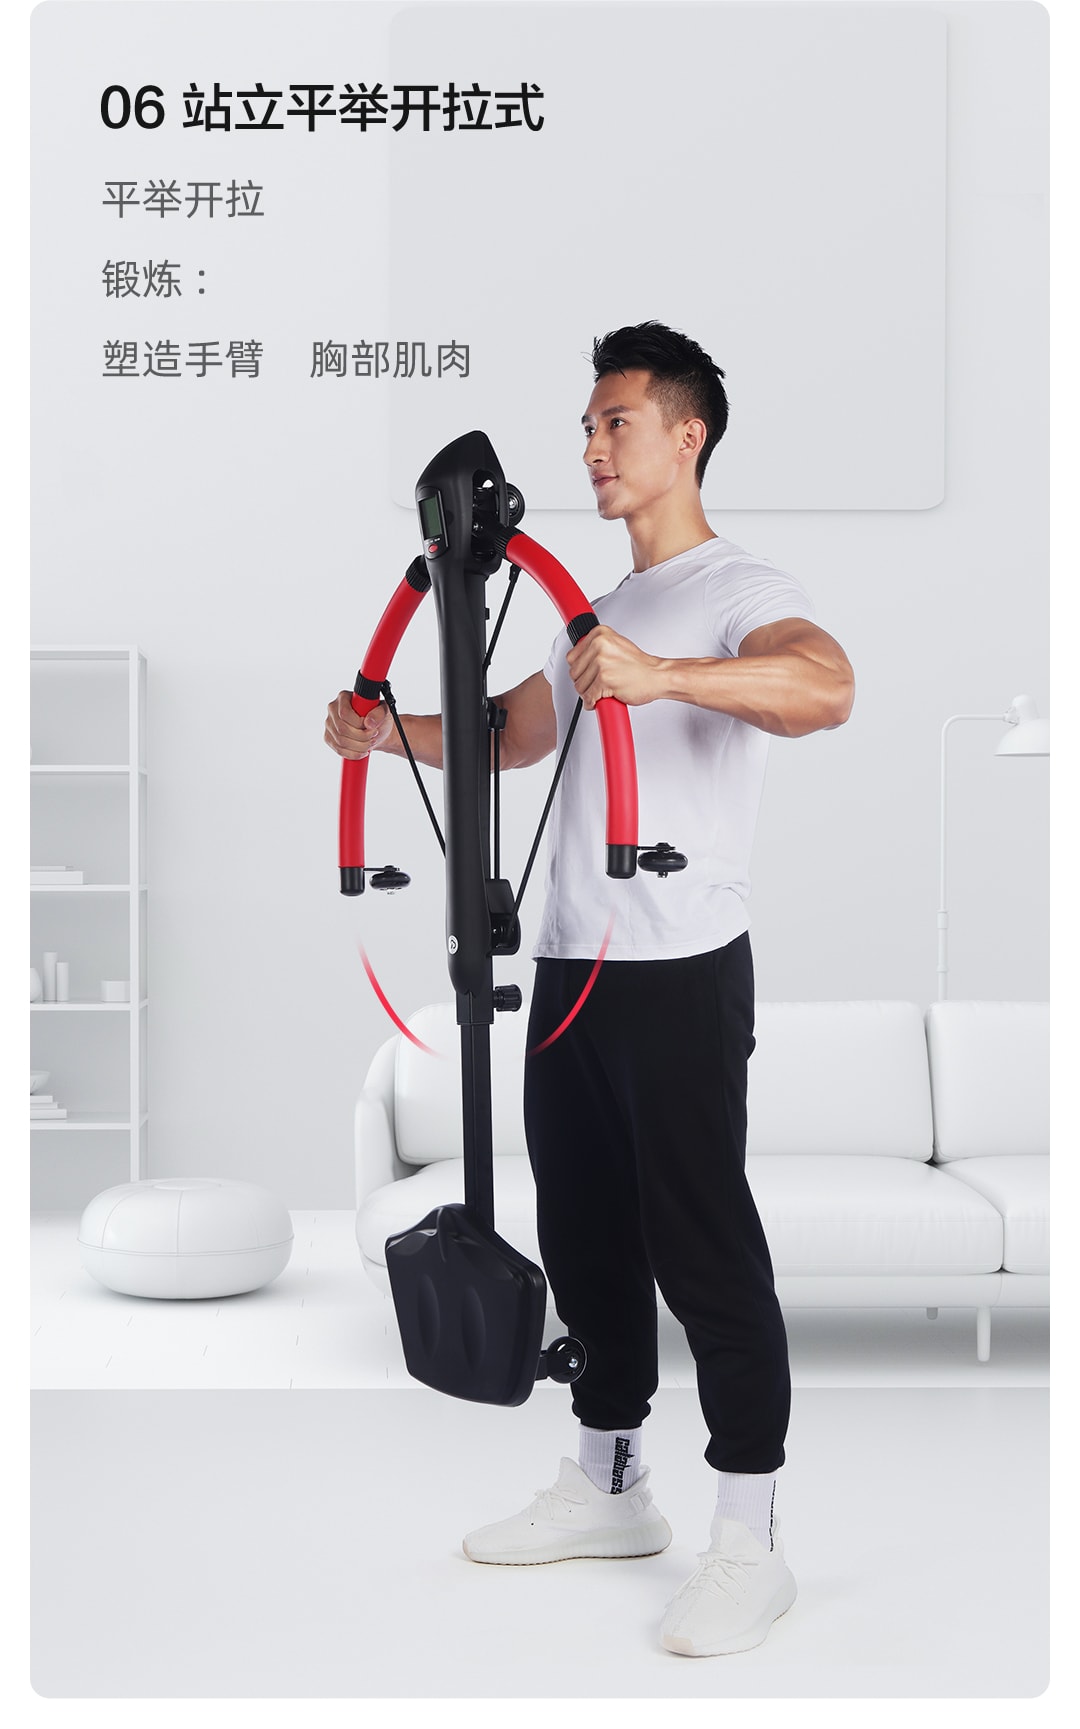 Xiaomi'den çok fonksiyonlu fitness makinesi YUNMAI YMAM-M451